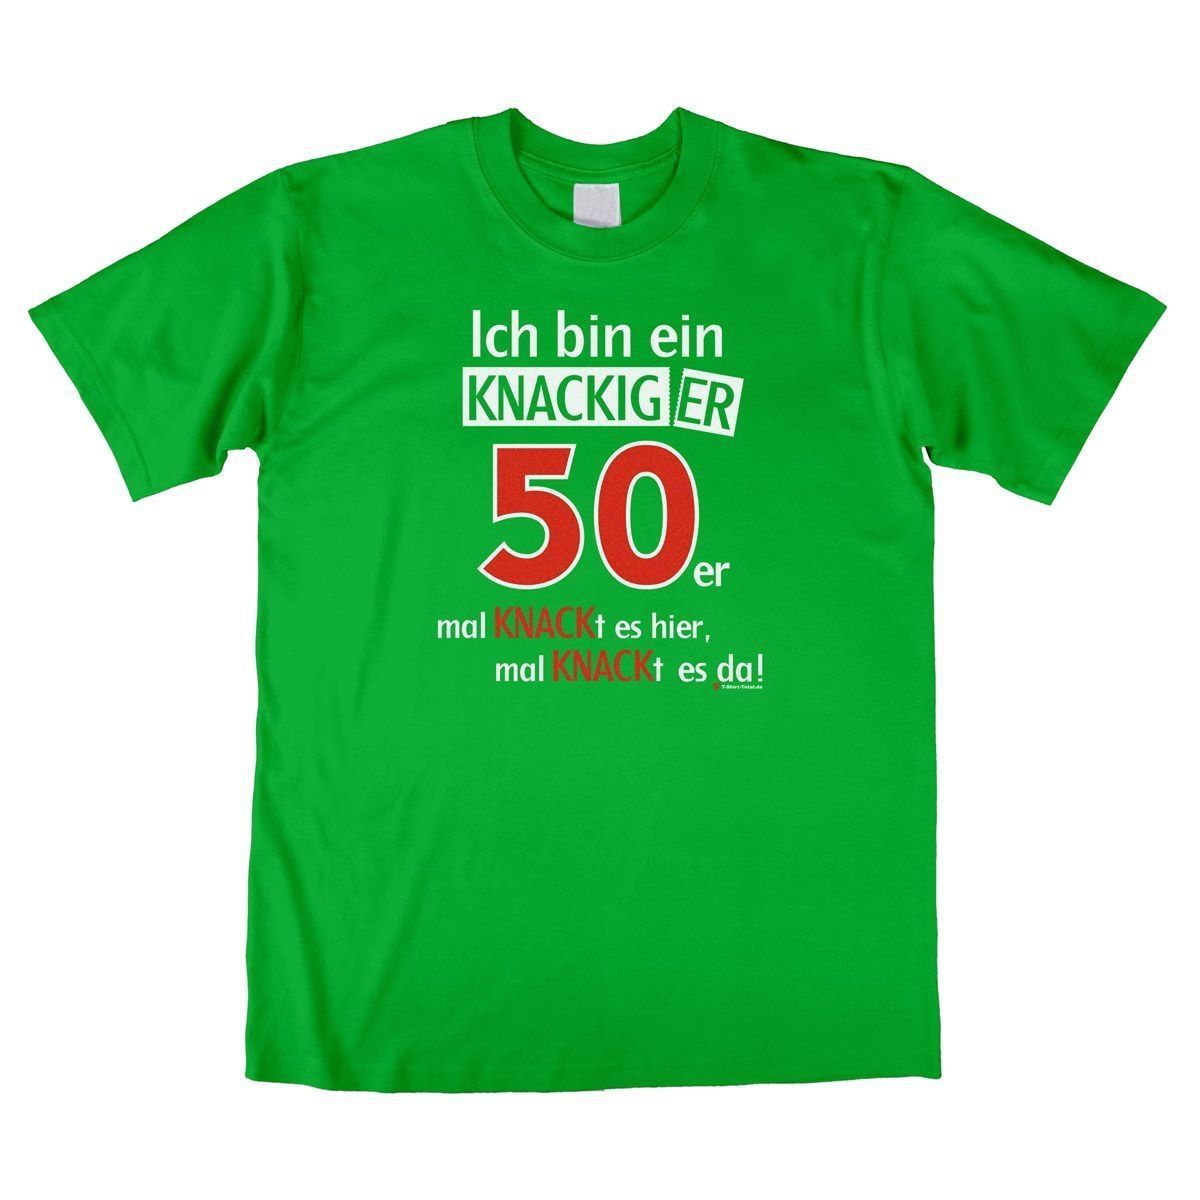 Knackiger 50er Unisex T-Shirt grün Large